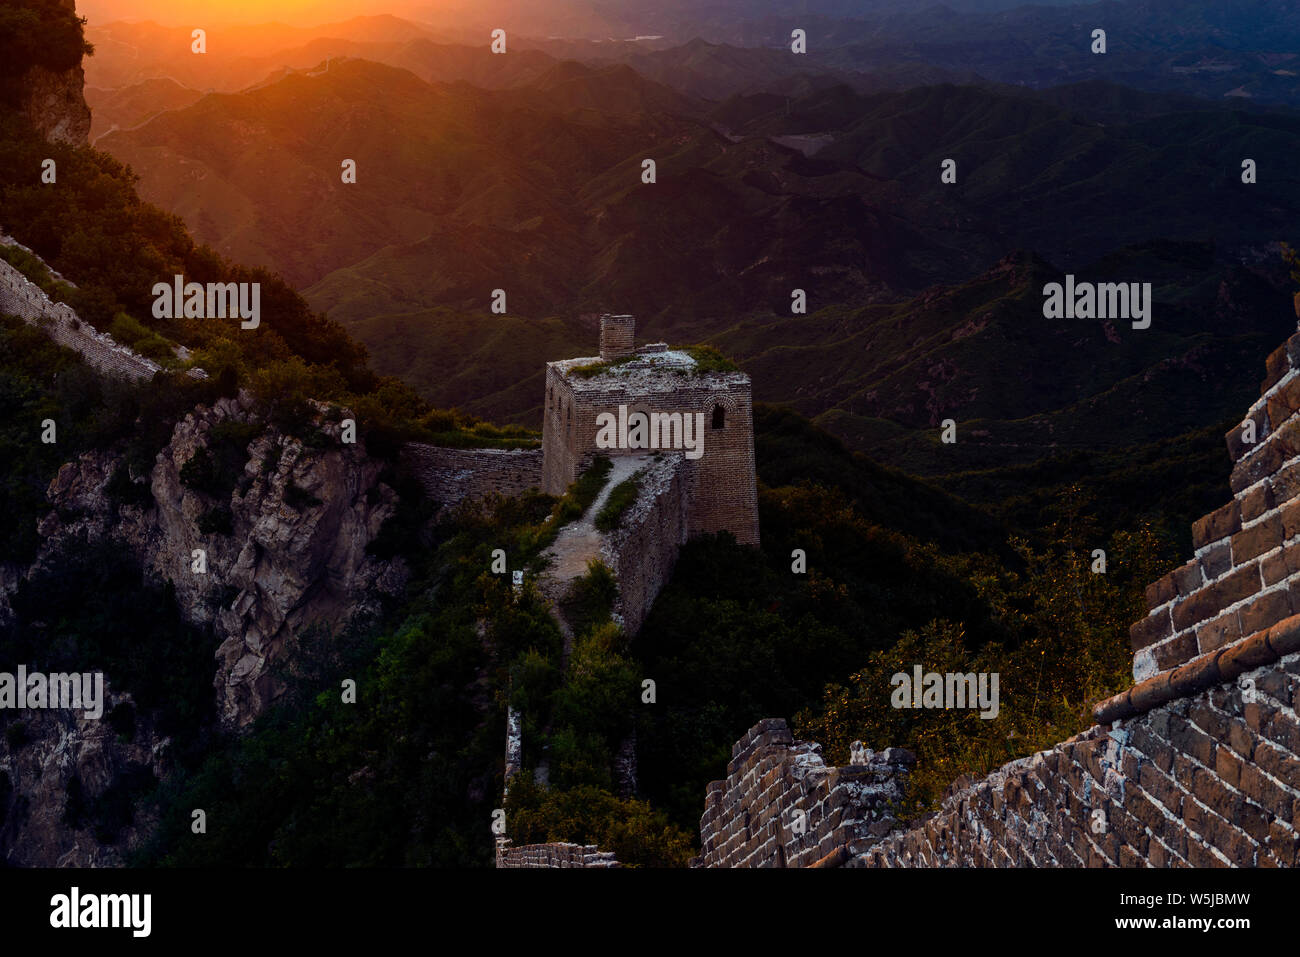 Die große Mauer von China - Simitai Abschnitt in der Nähe von Tang Jia zhai - Dies bedeutet, Tang Family Village, Tang ist ein Chines Vorname. Die berühmte Burg auf Stockfoto